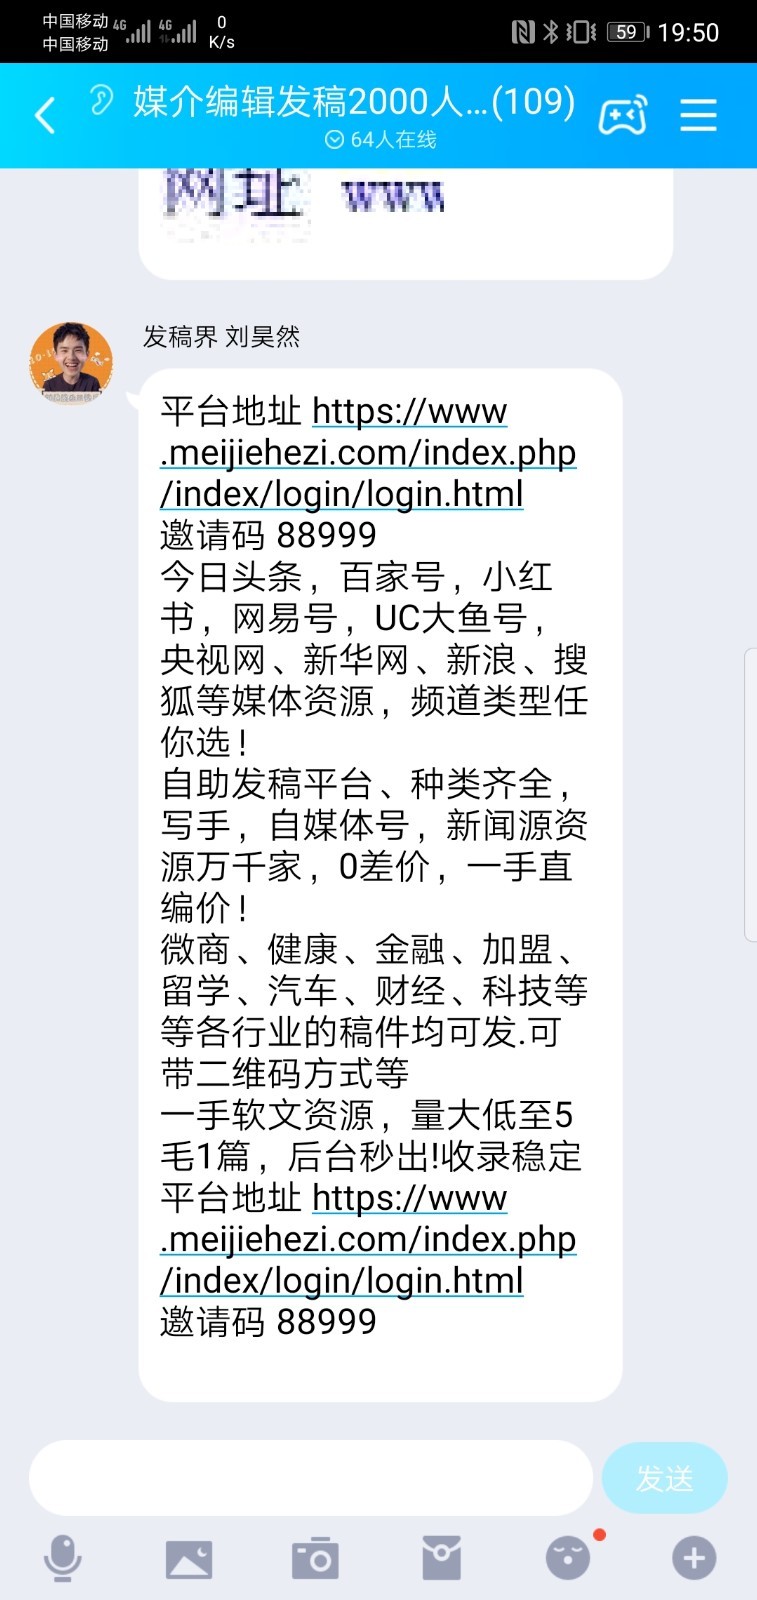 网曝刘昊然头像被商用 疑似侵犯其肖像权(图1)